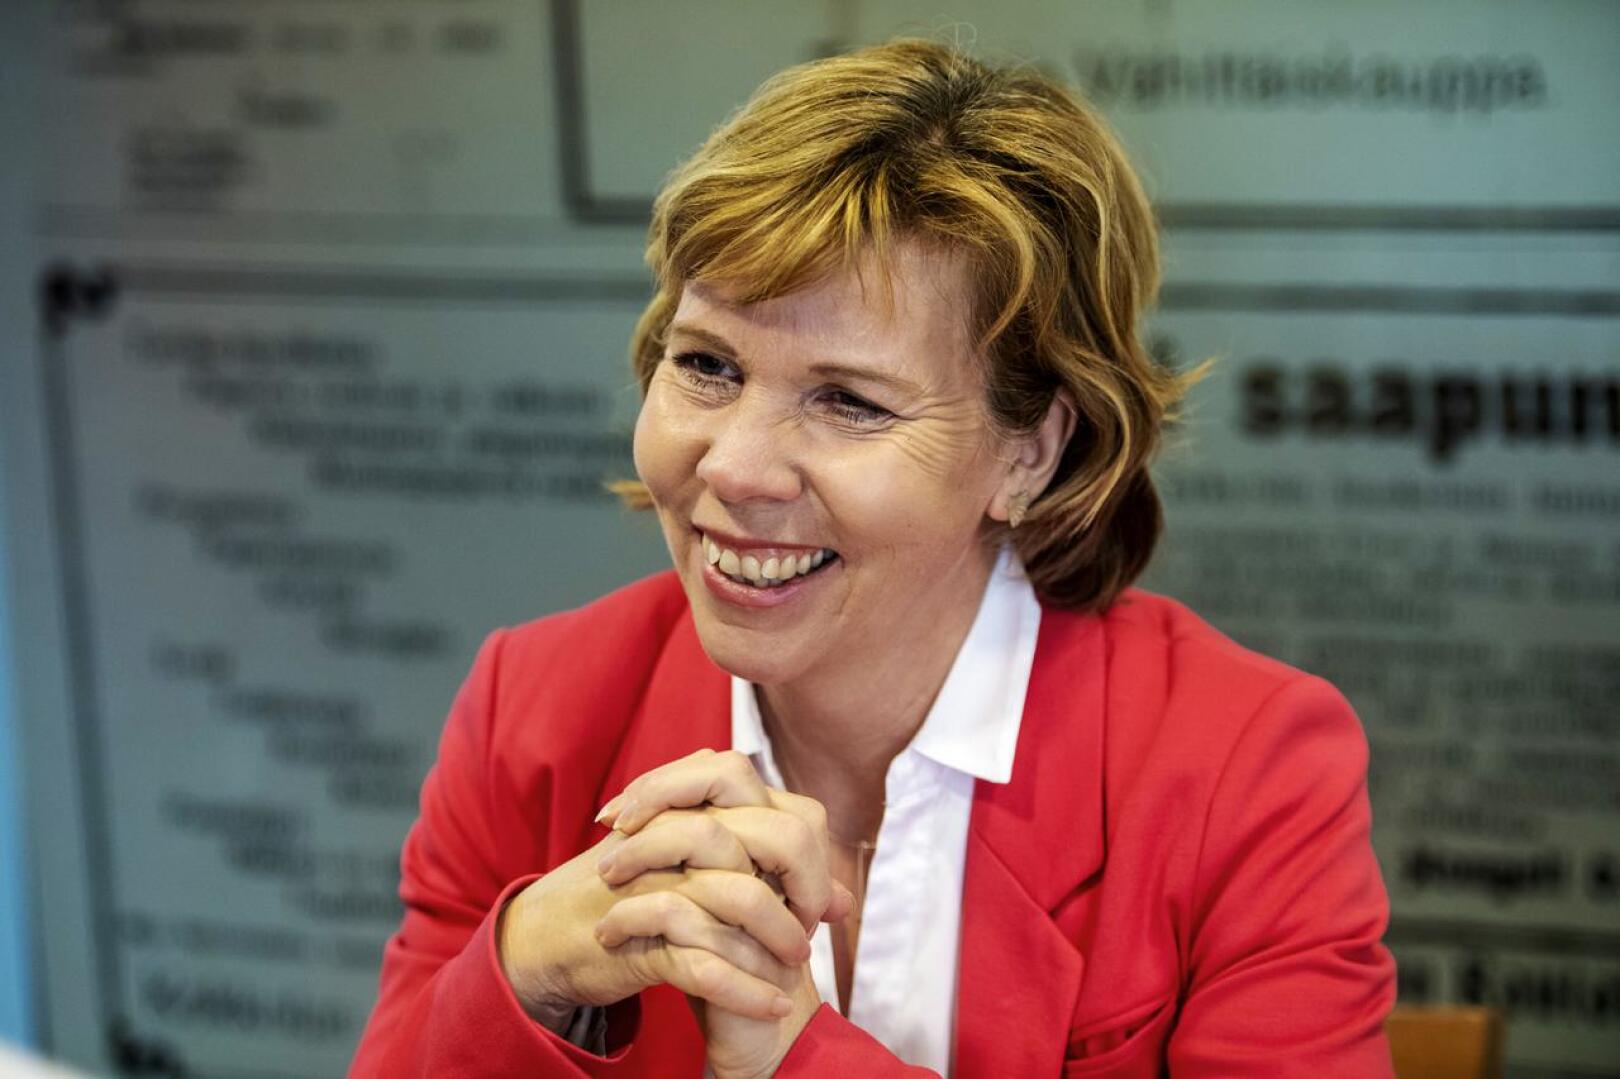 (arkistokuva)Puolueen puheenjohtajan, pietarsaarelaisen oikeusministeri Anna-Maja Henrikssonin mielestä kuntapolitiikassa tarvitaan sekä arvoja että hyvää taloudenpito